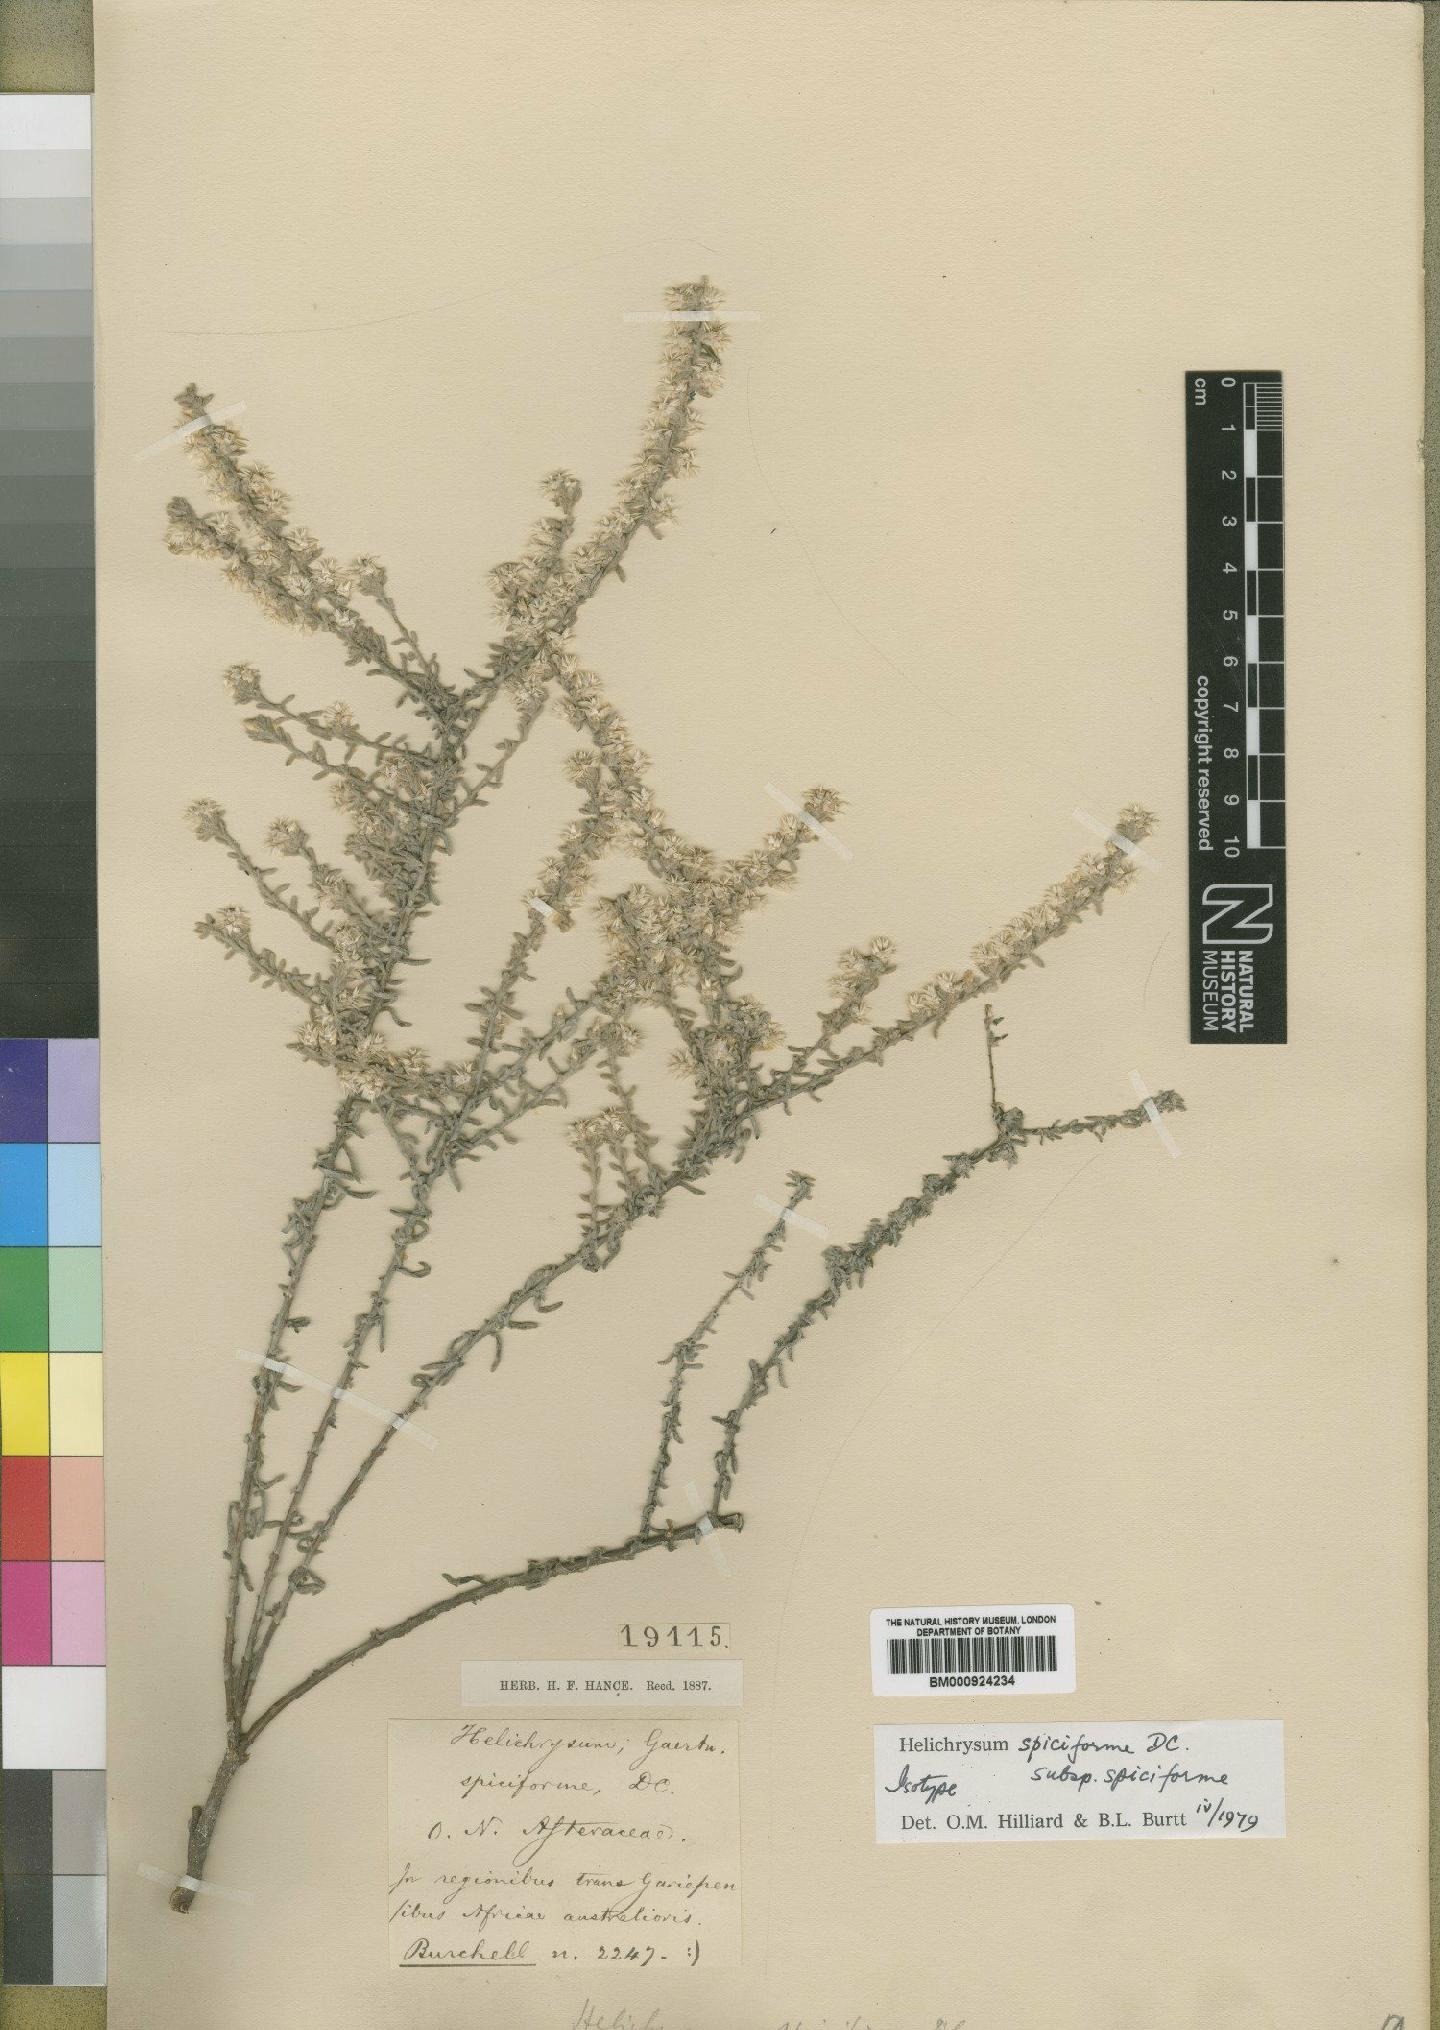 To NHMUK collection (Helichrysum spiciforme DC.; Type; NHMUK:ecatalogue:4529262)